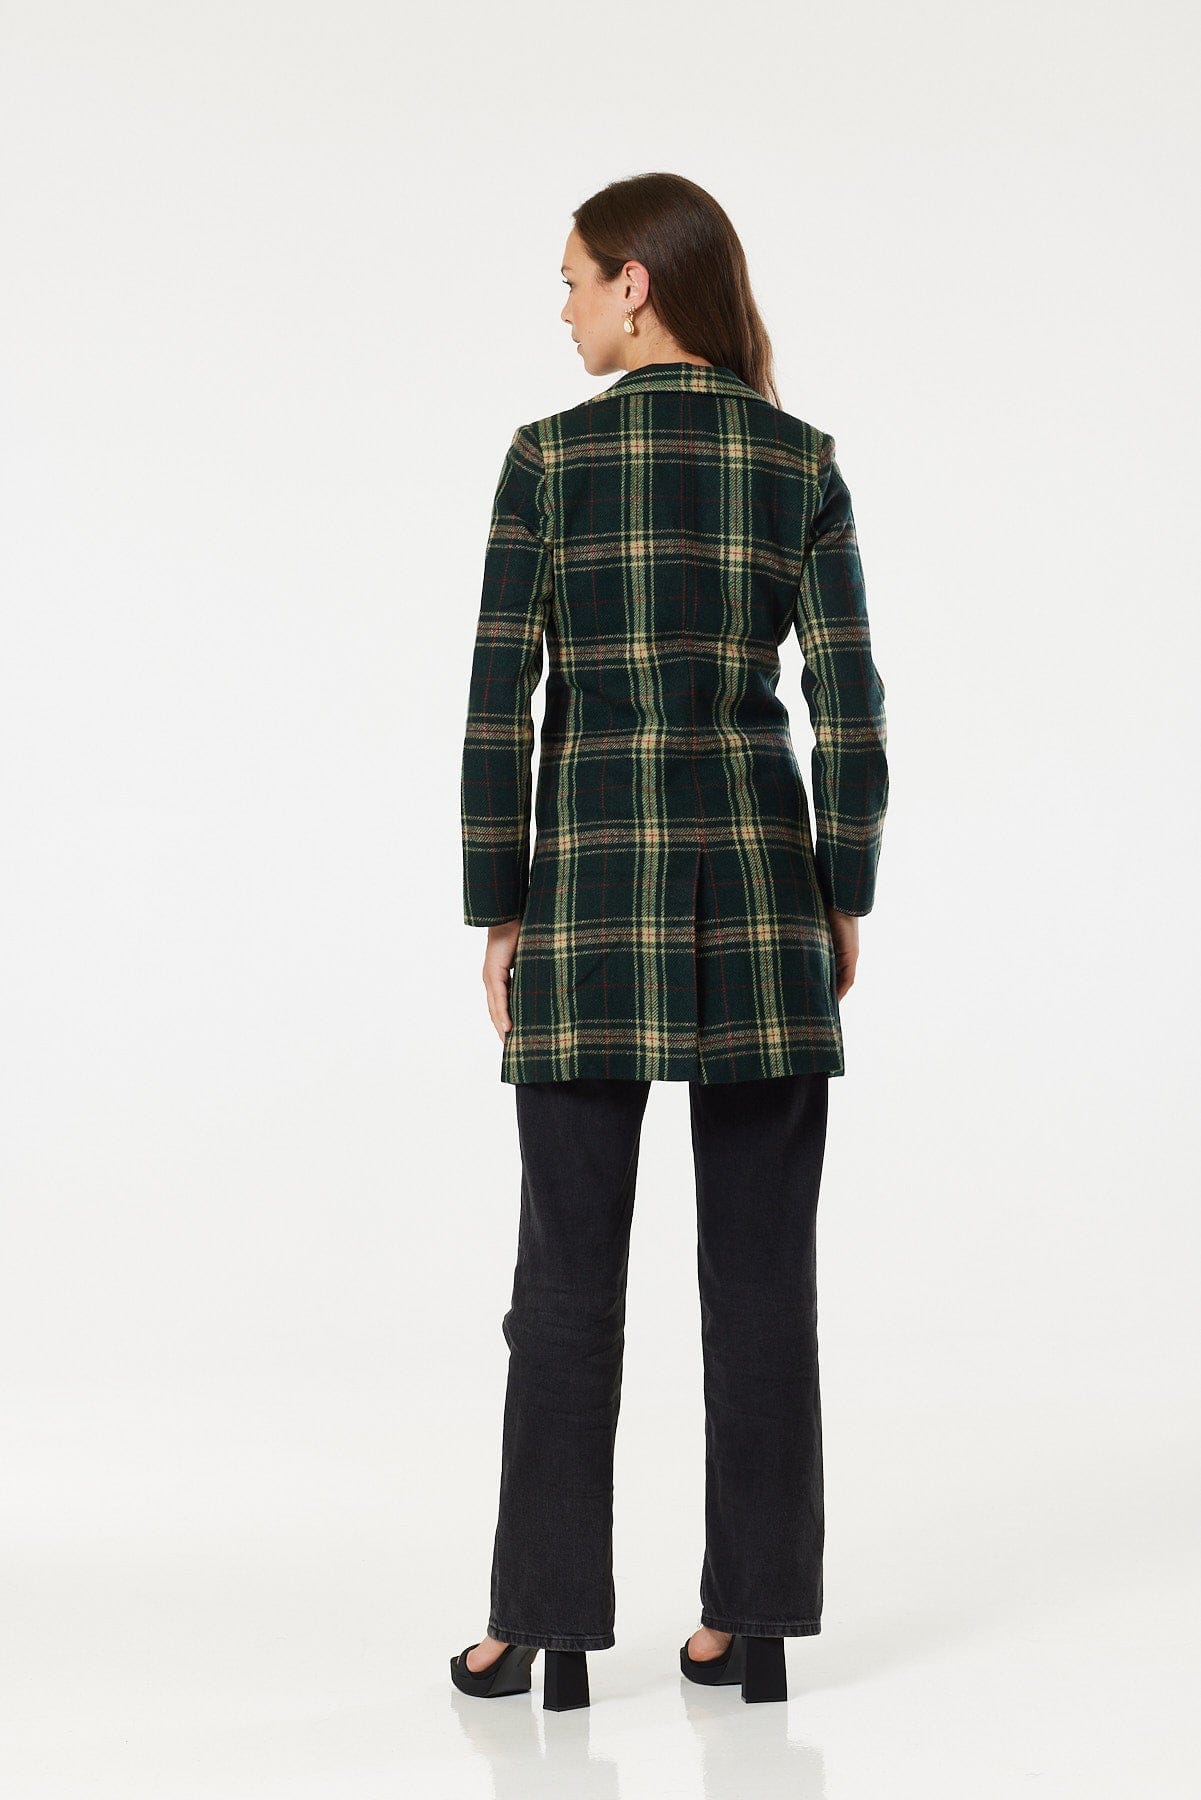 Woollen Green Check(Tartan) Knee Legnth Davia Coat